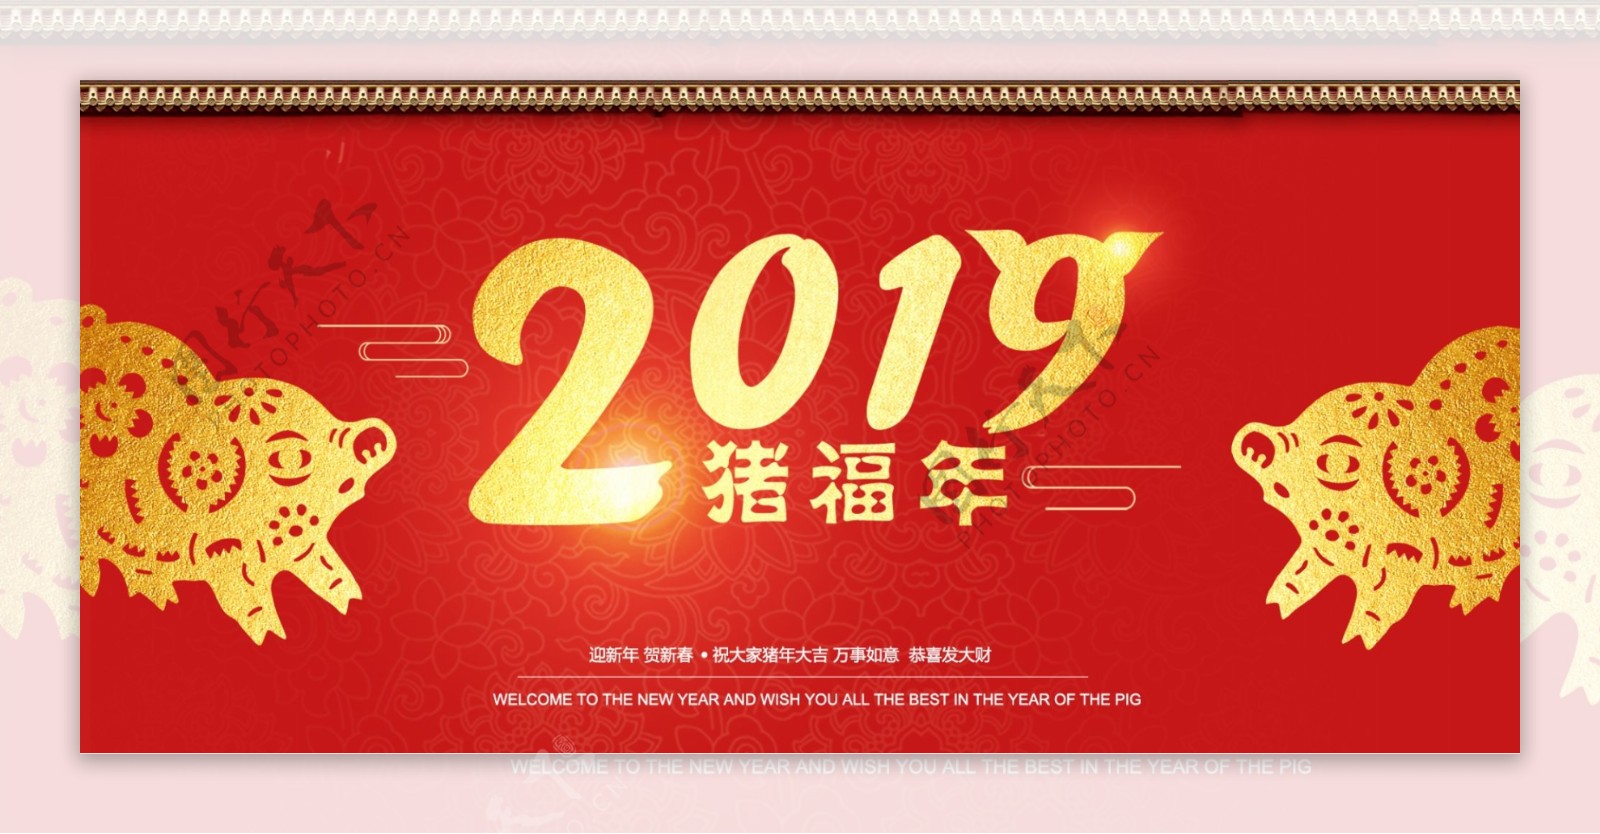 2019年祝福猪年红色喜庆类猪年节日大图